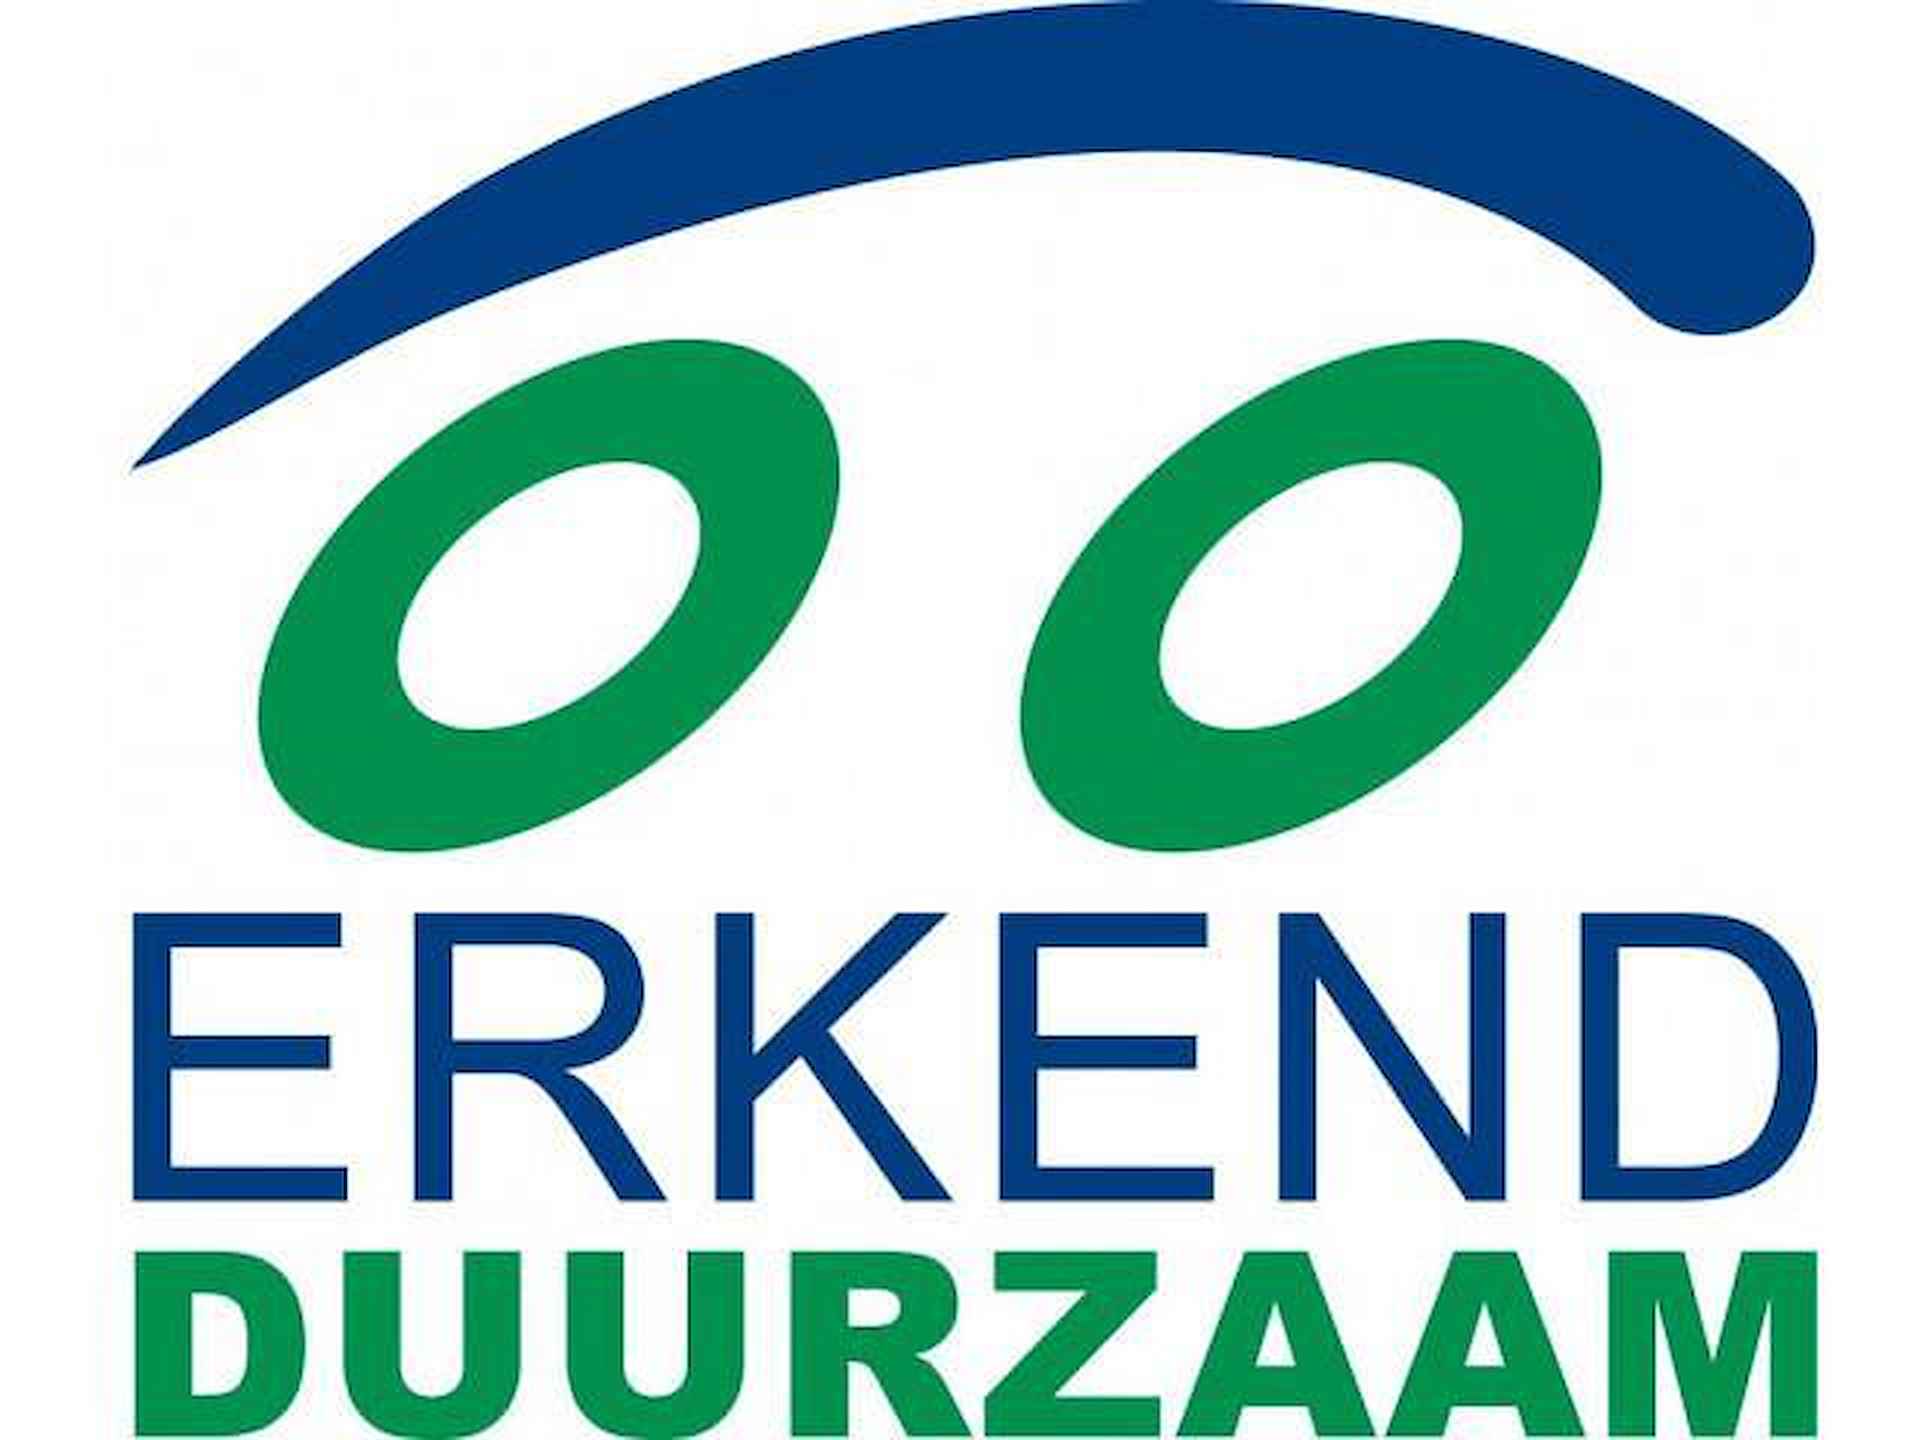 Dacia Sandero 1.0 TCe 100 ECO-G Journey | NU met standaard 5 jaar fabrieksgarantie bij Renault Zeeuw & Zeeuw Delft! | - 11/13